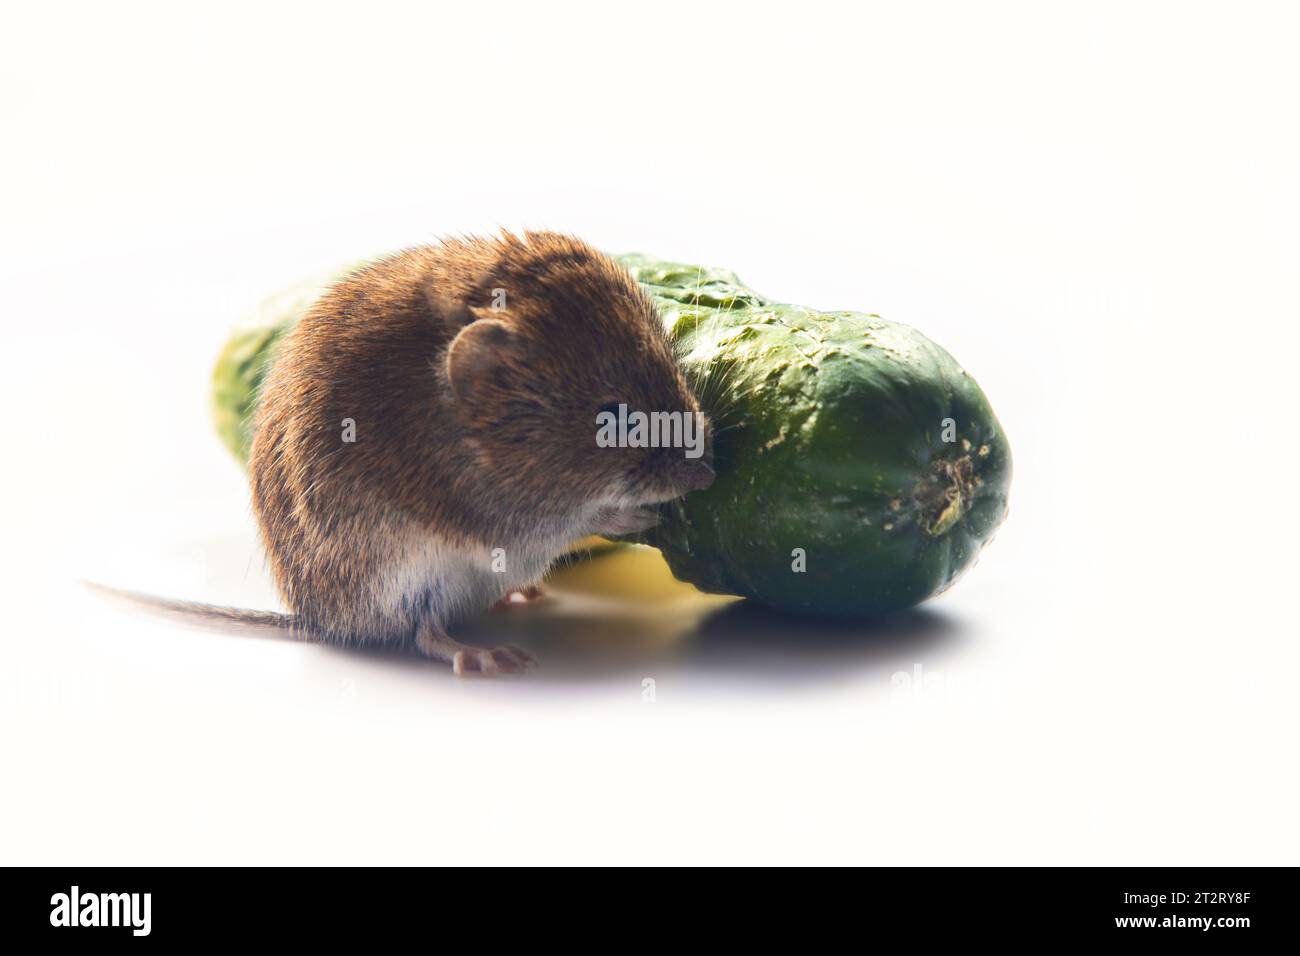 Mäuse schädigen Gemüse in Gemüselagern schwer. Rotrücken Vole isst Gurke auf weißem Hintergrund Stockfoto